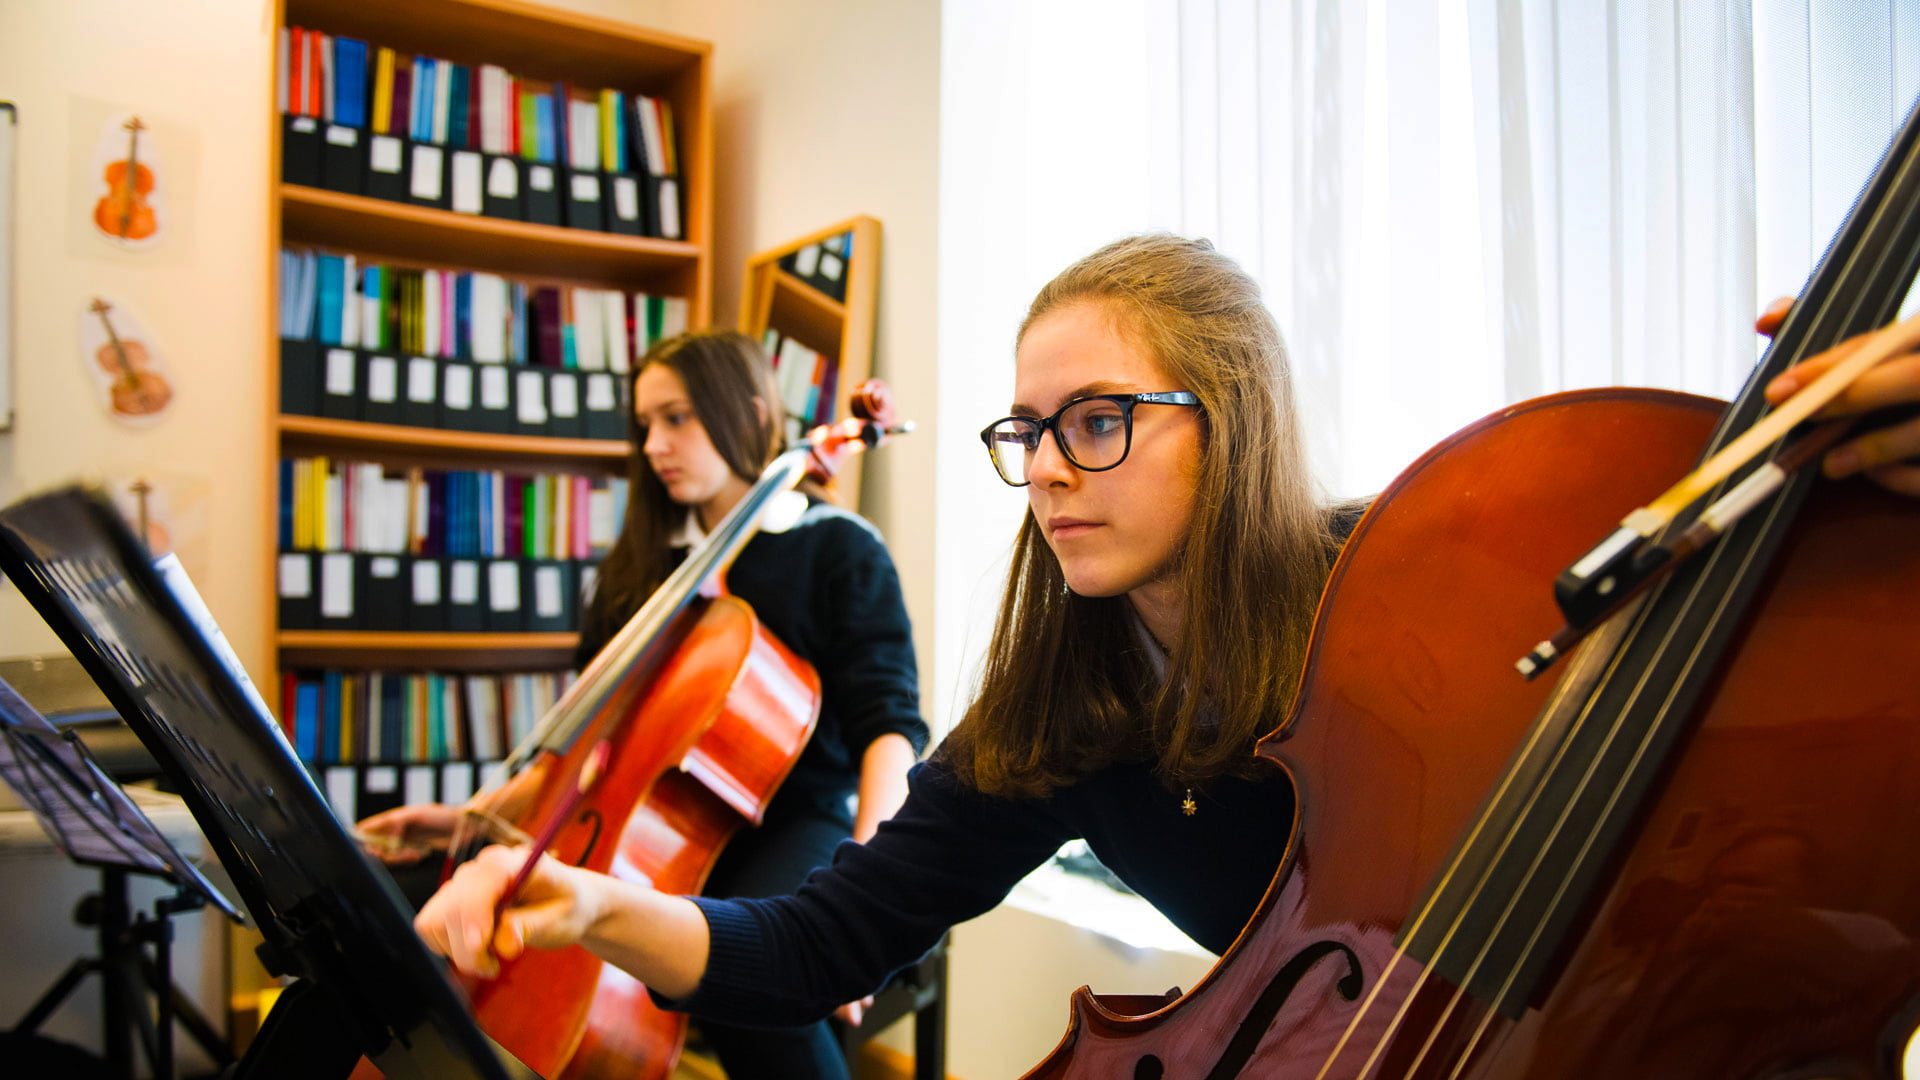 Foto, das junge Frauen an der britischen Schule Al Khubairat zeigt, die ihre Instrumente in einer Musikklasse spielen